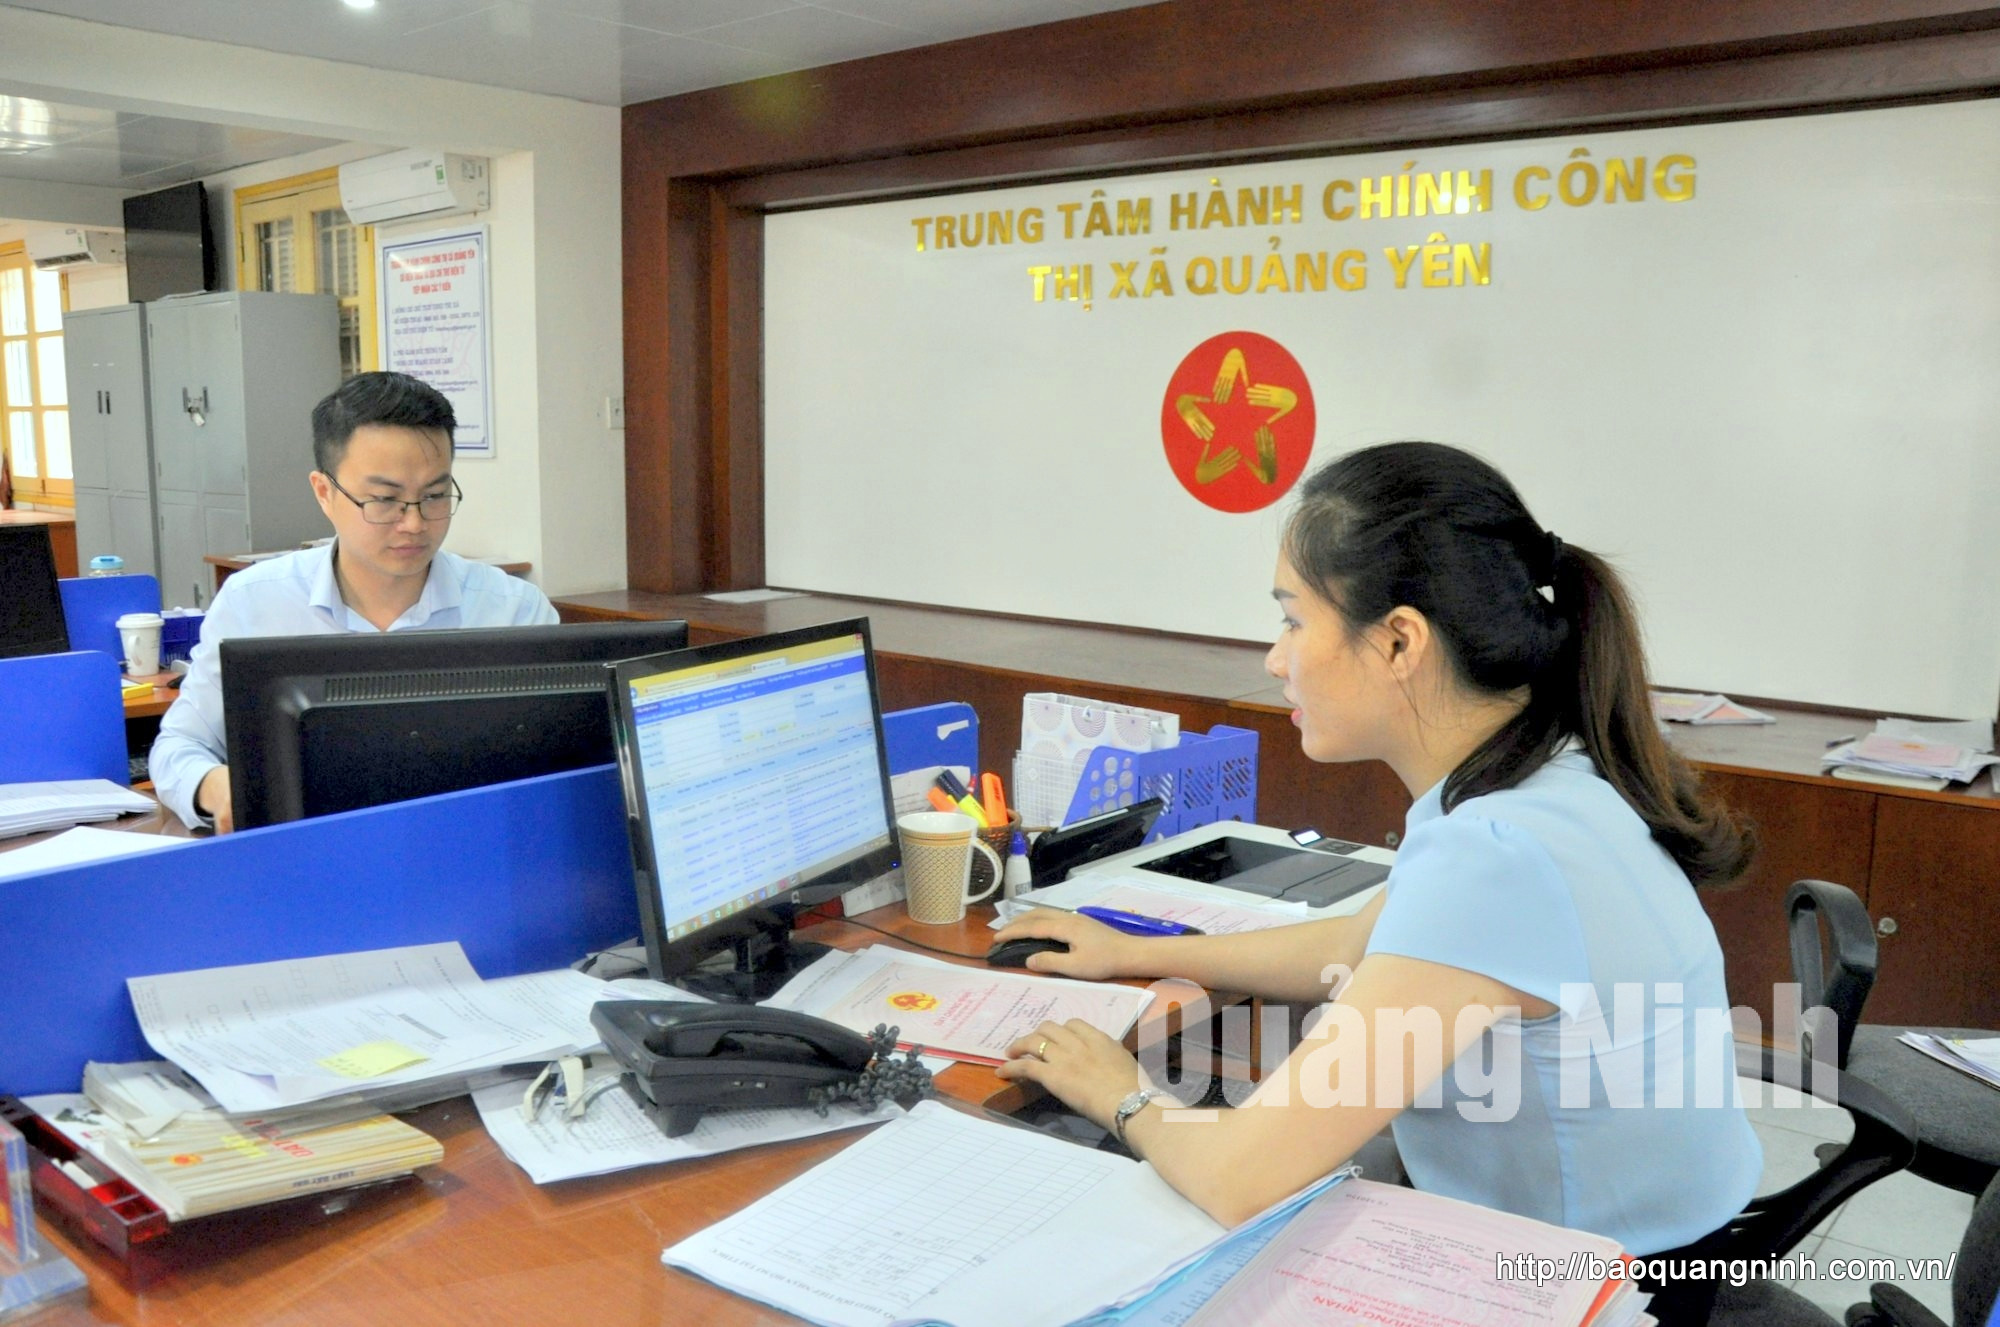 Đội ngũ cán bộ, công chức tại Trung tâm Hành chính công TX Quảng Yên (5-2020). Ảnh: Minh Hà